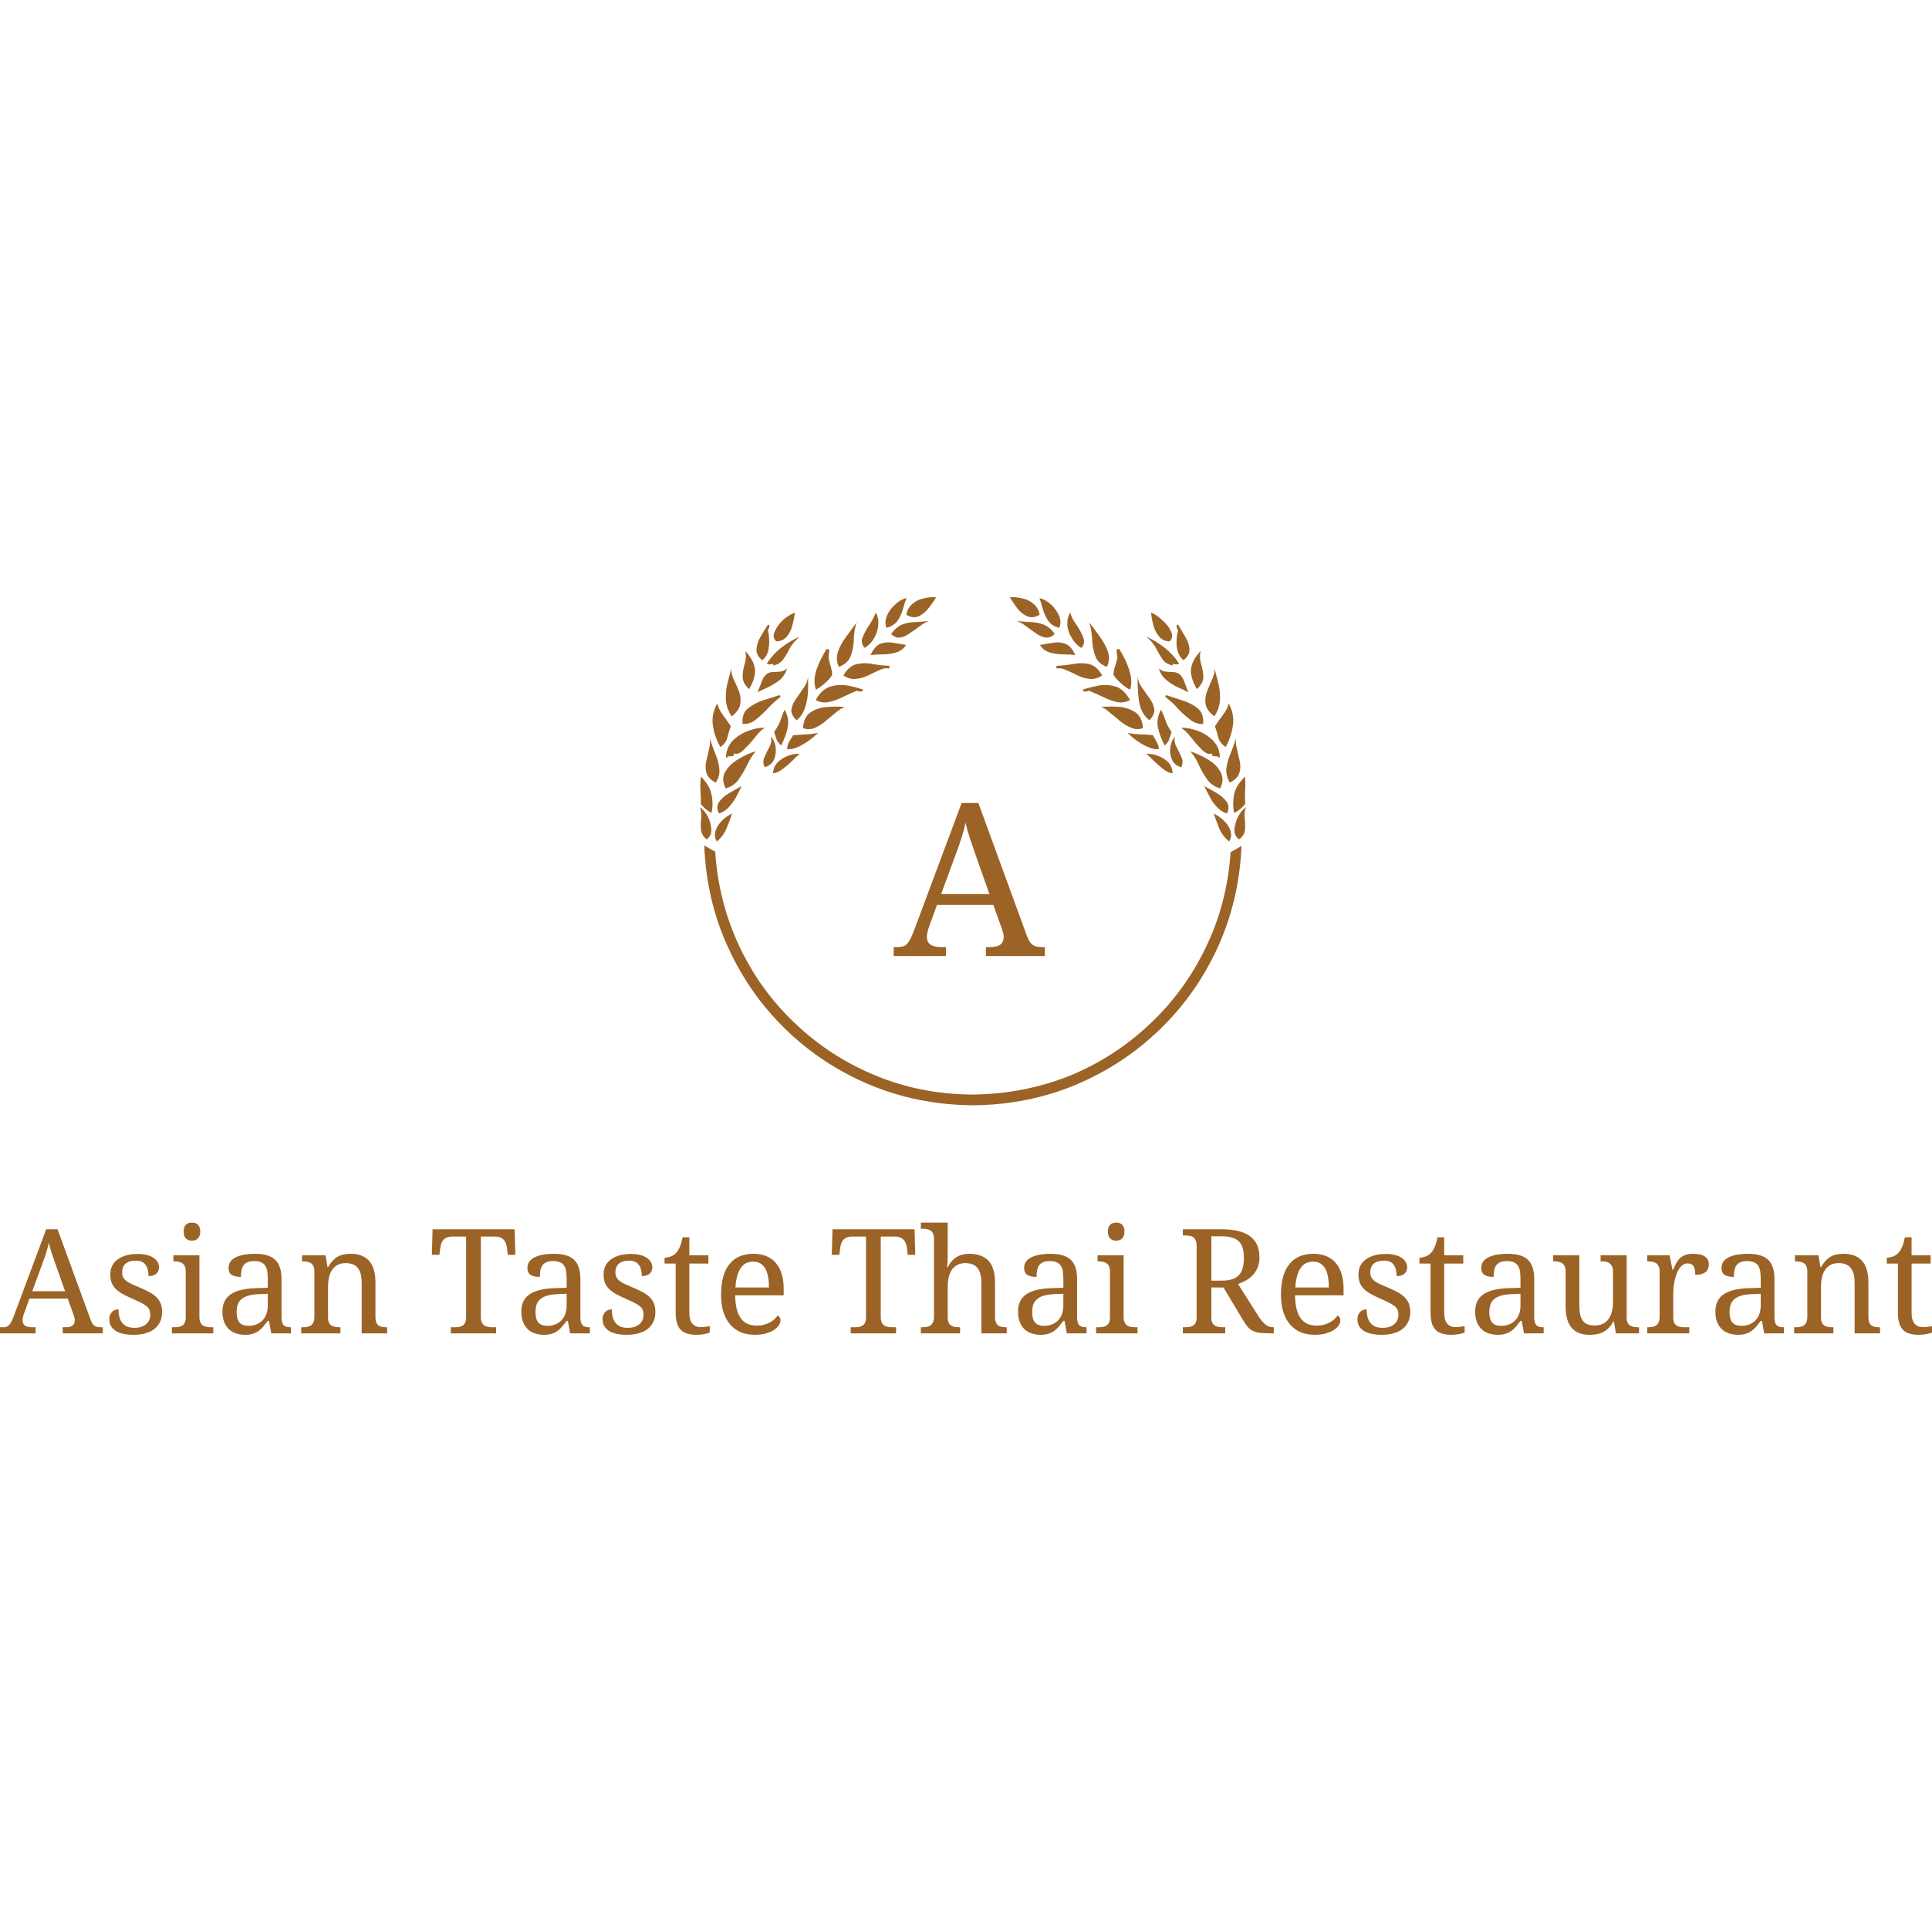 Asian Taste Thai Restaurant Logo